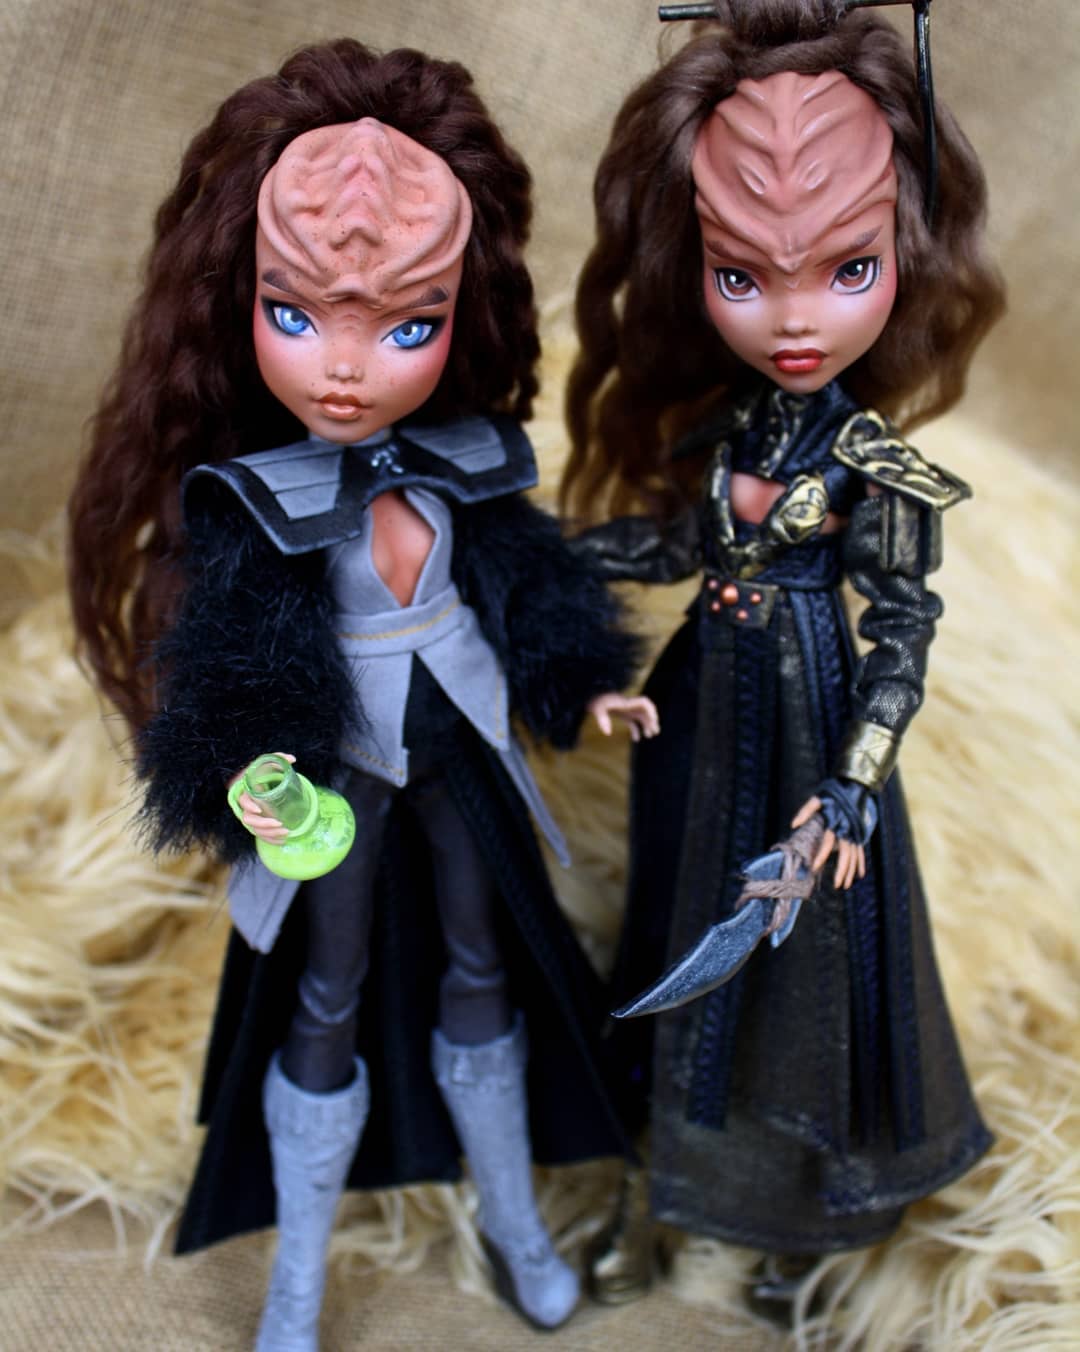 Klingon dolls